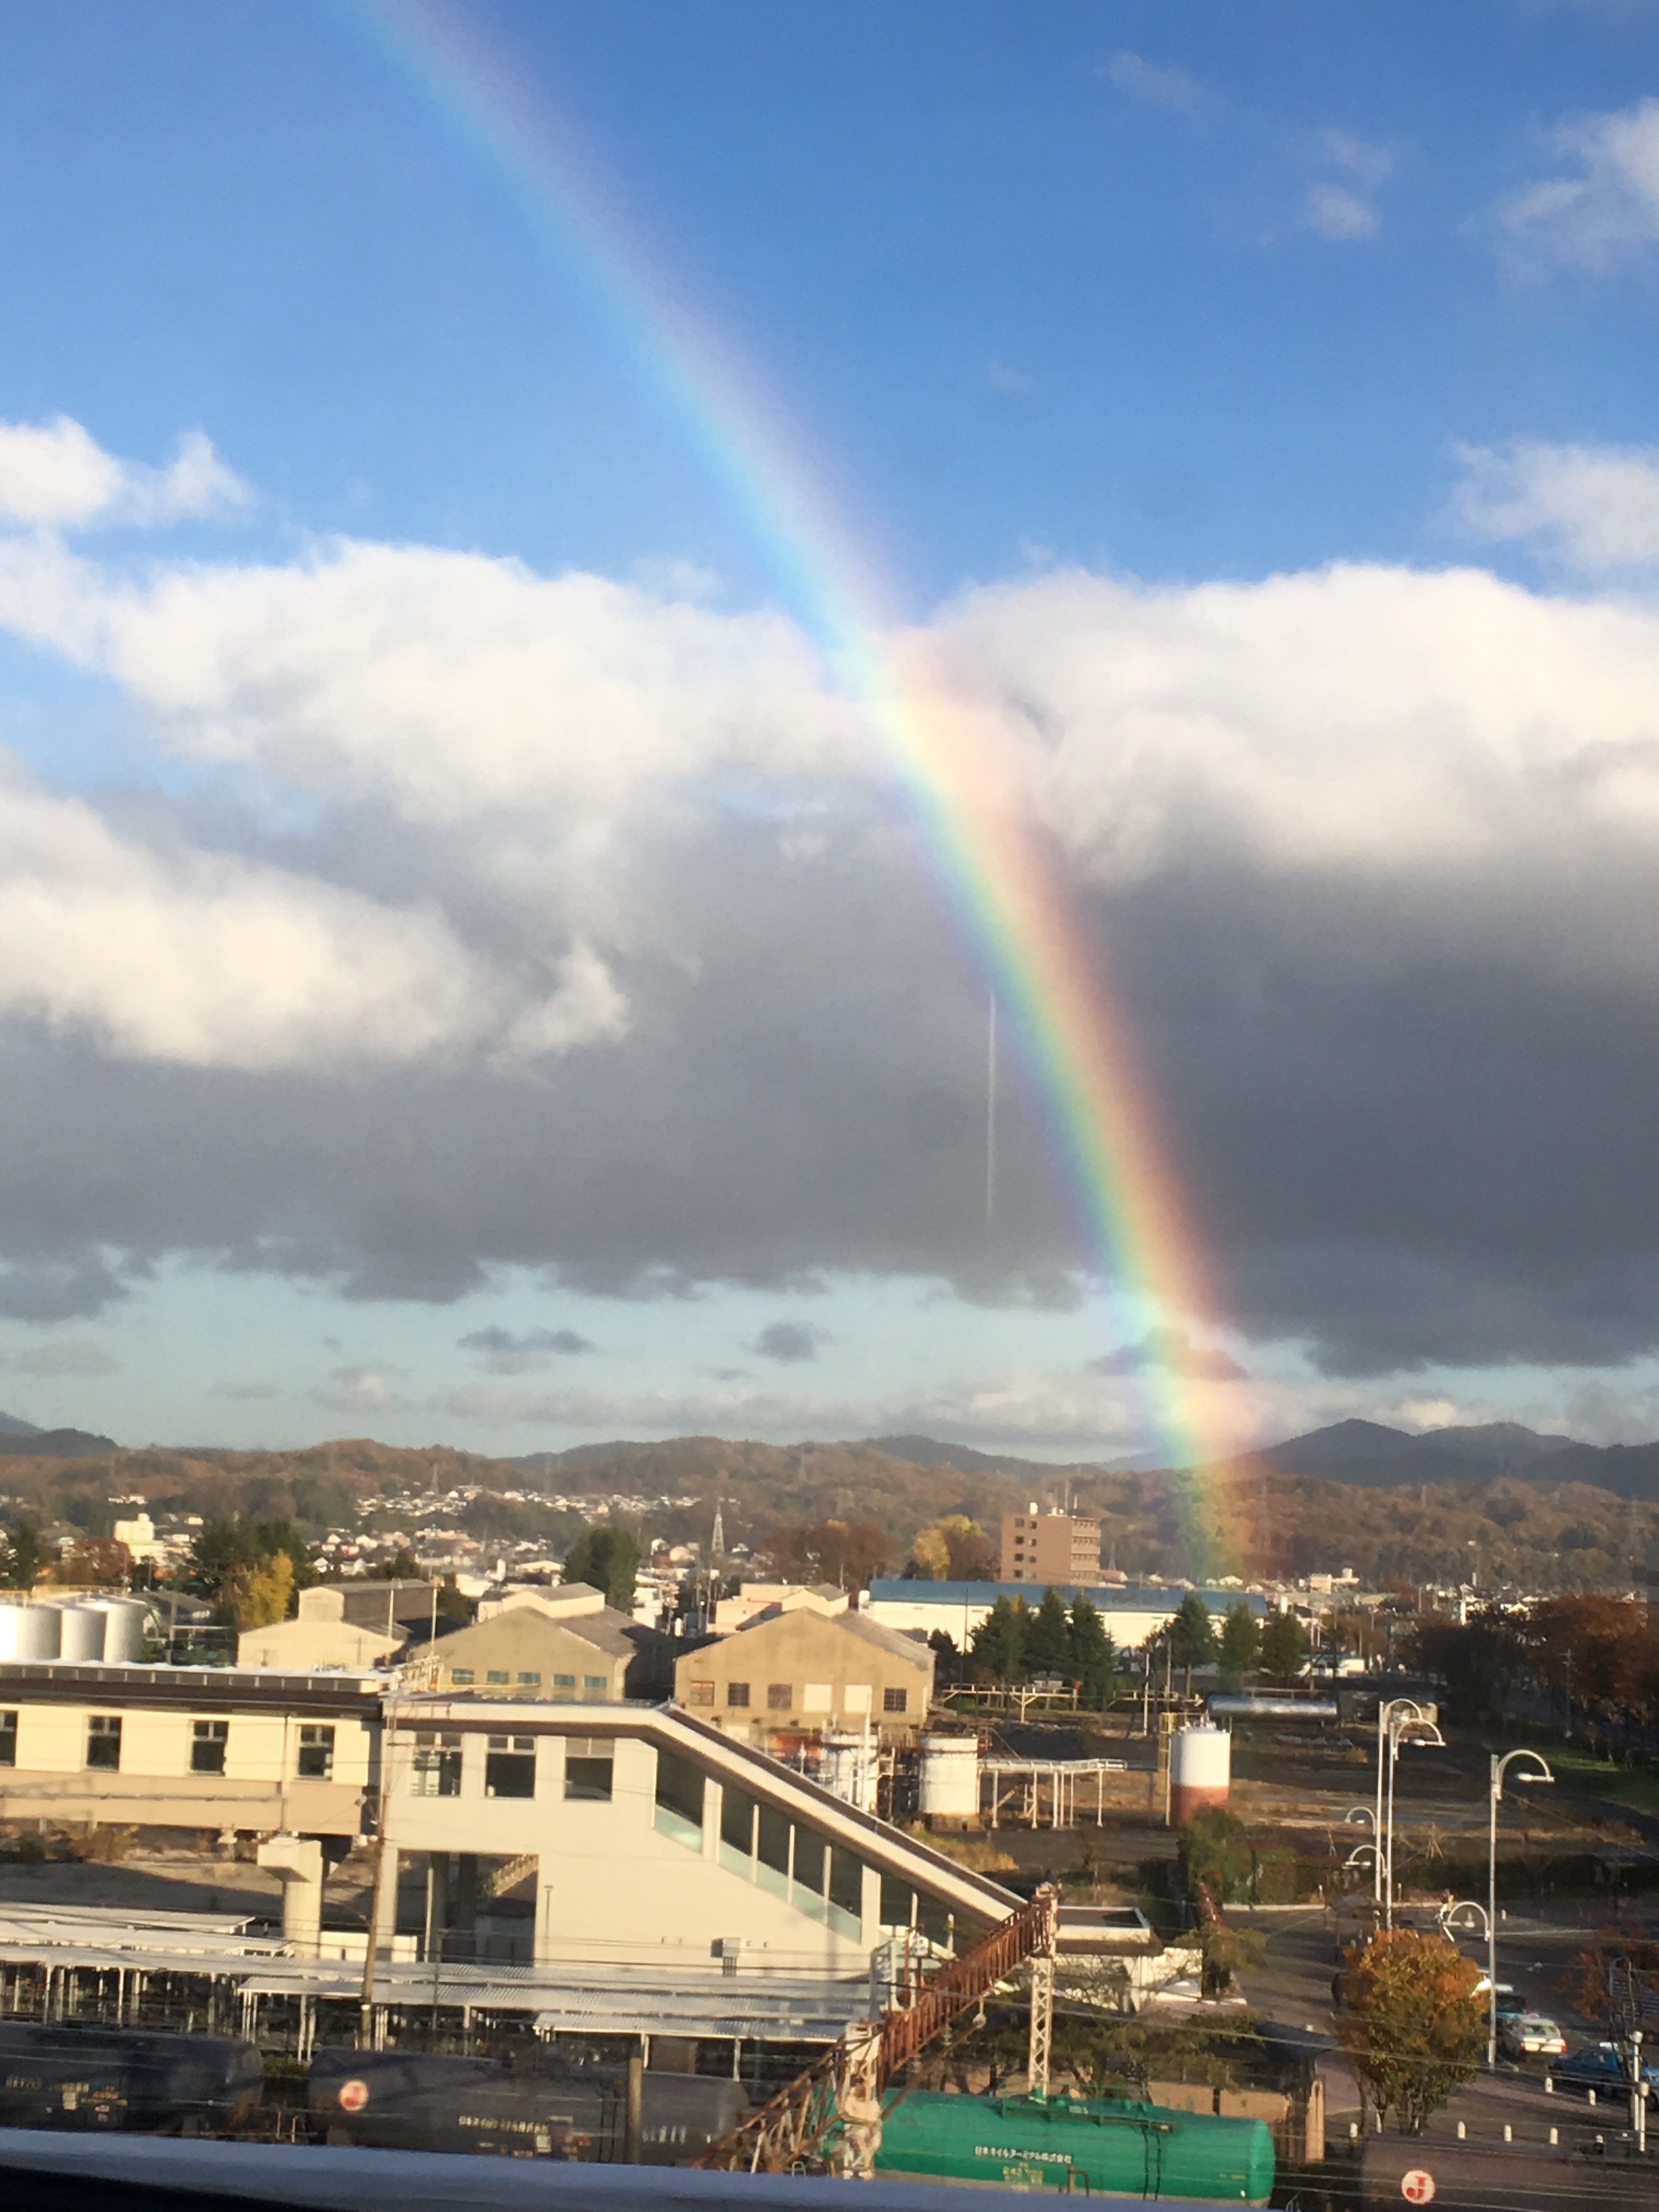 2019年11月19日郡山での活動を終えた電車の中から、美しい虹が見えました。被災地の復興を祈り、きぼうときずなのこれからの活動への激励とも思える大きな大きな虹でした